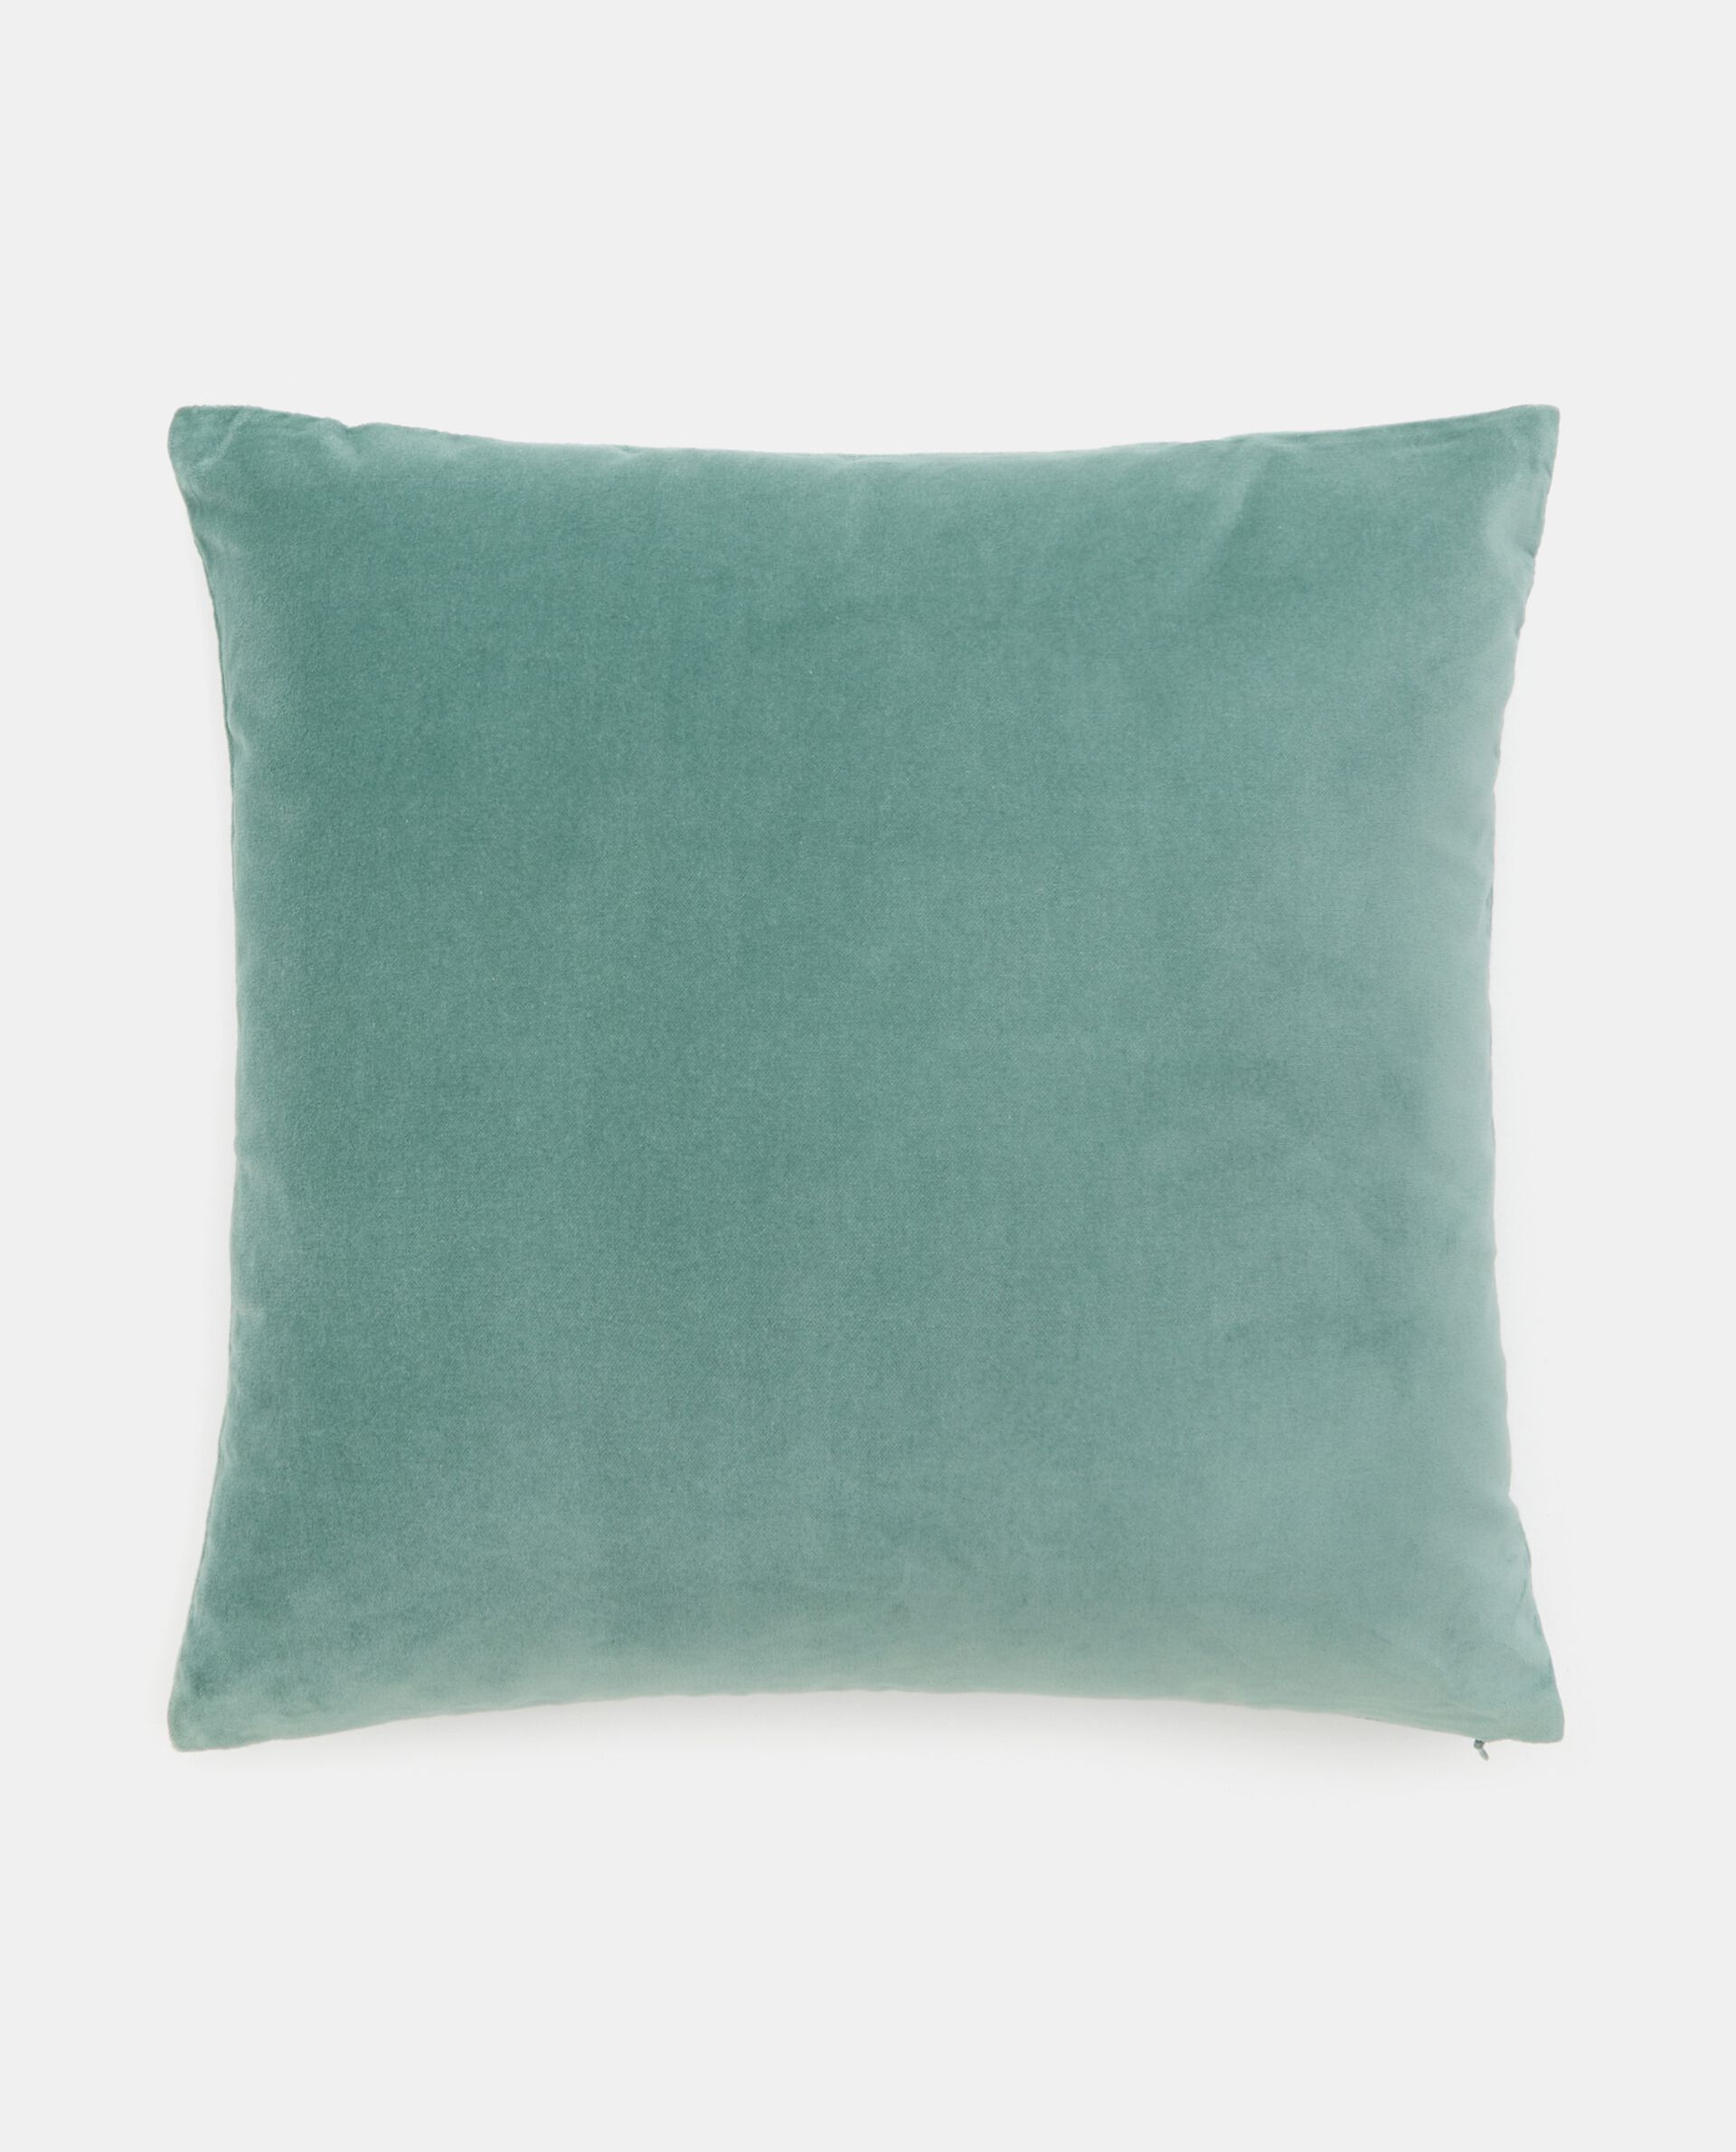 чехол на подушку из плетеного хлопка panama 40 x 40 см зеленый Бархатный чехол на подушку из чистого хлопка, зеленый